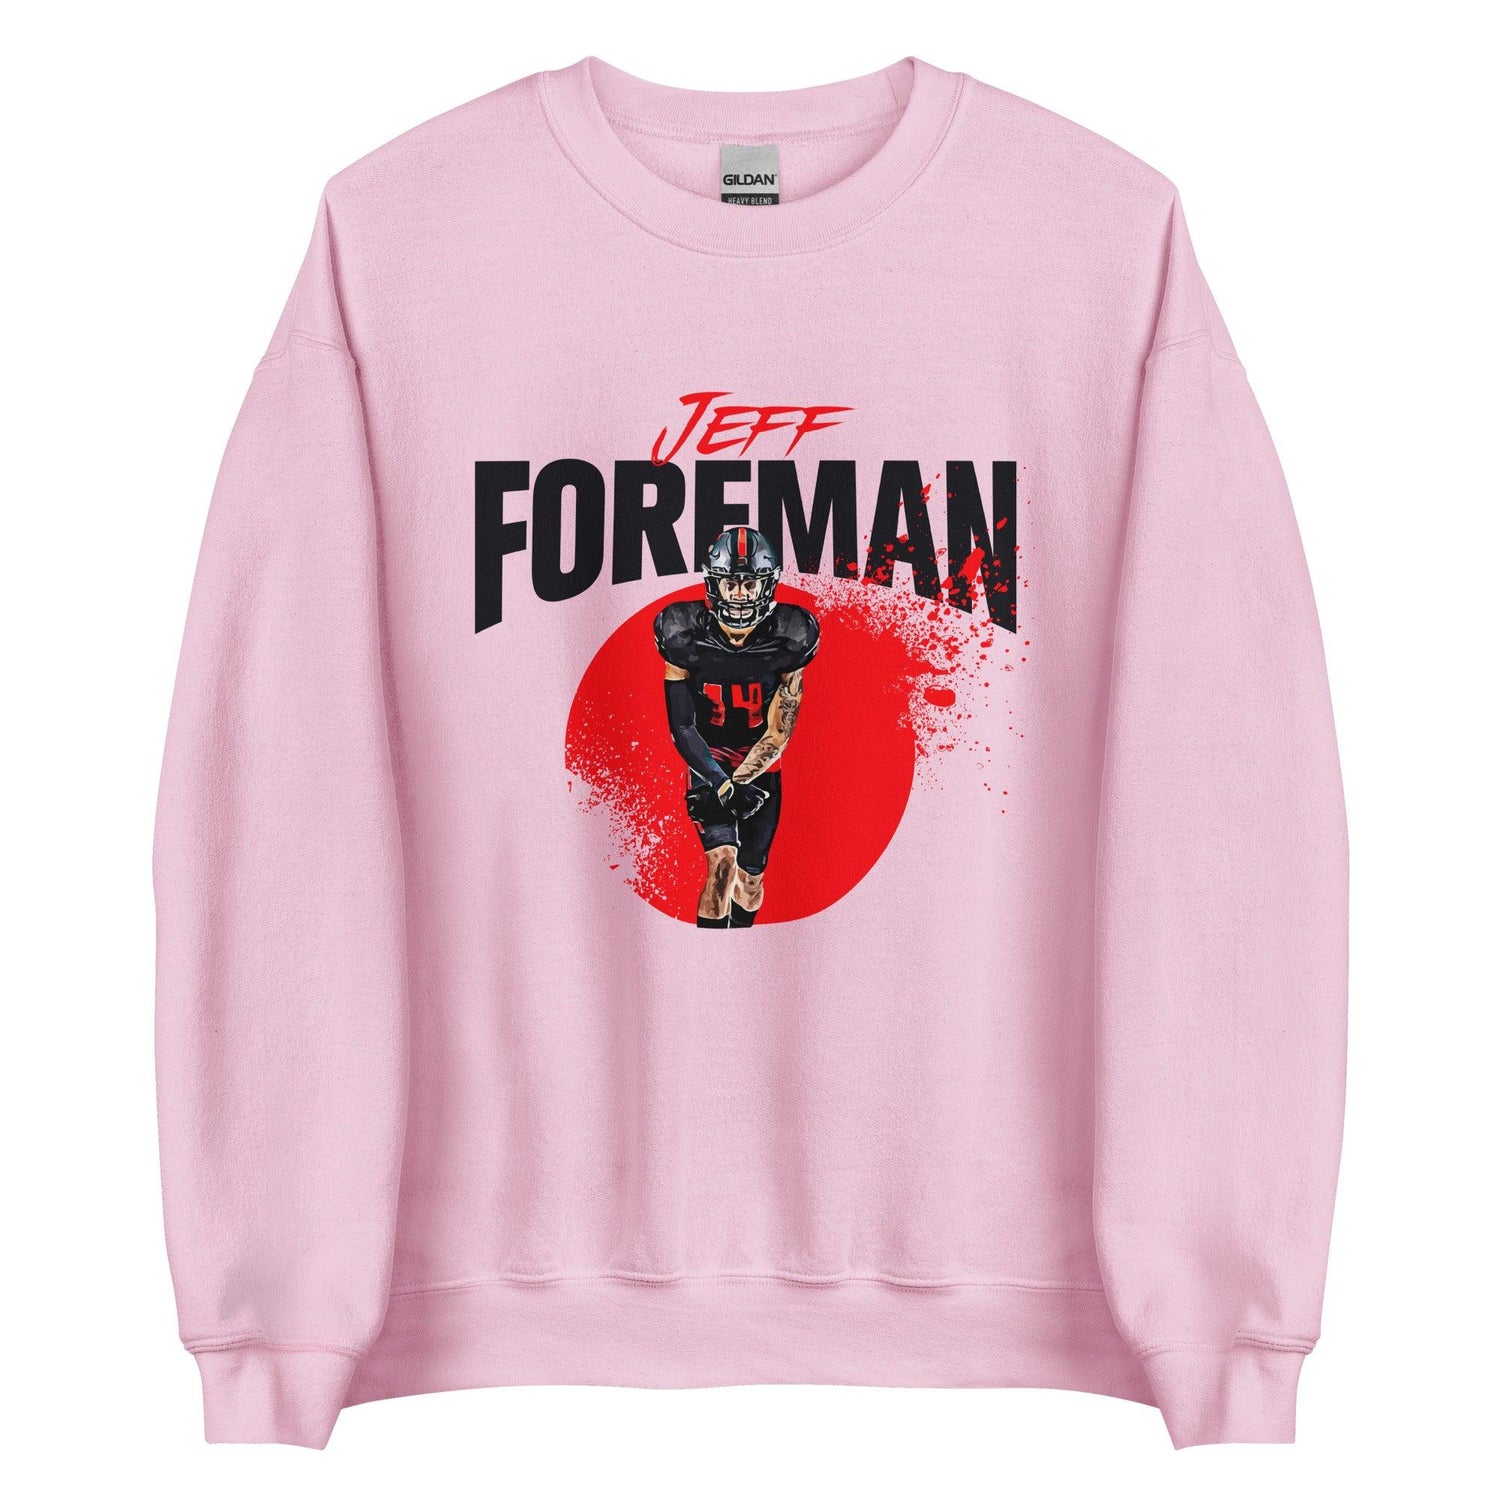 Jeff Foreman "Splash" Sweatshirt - Fan Arch